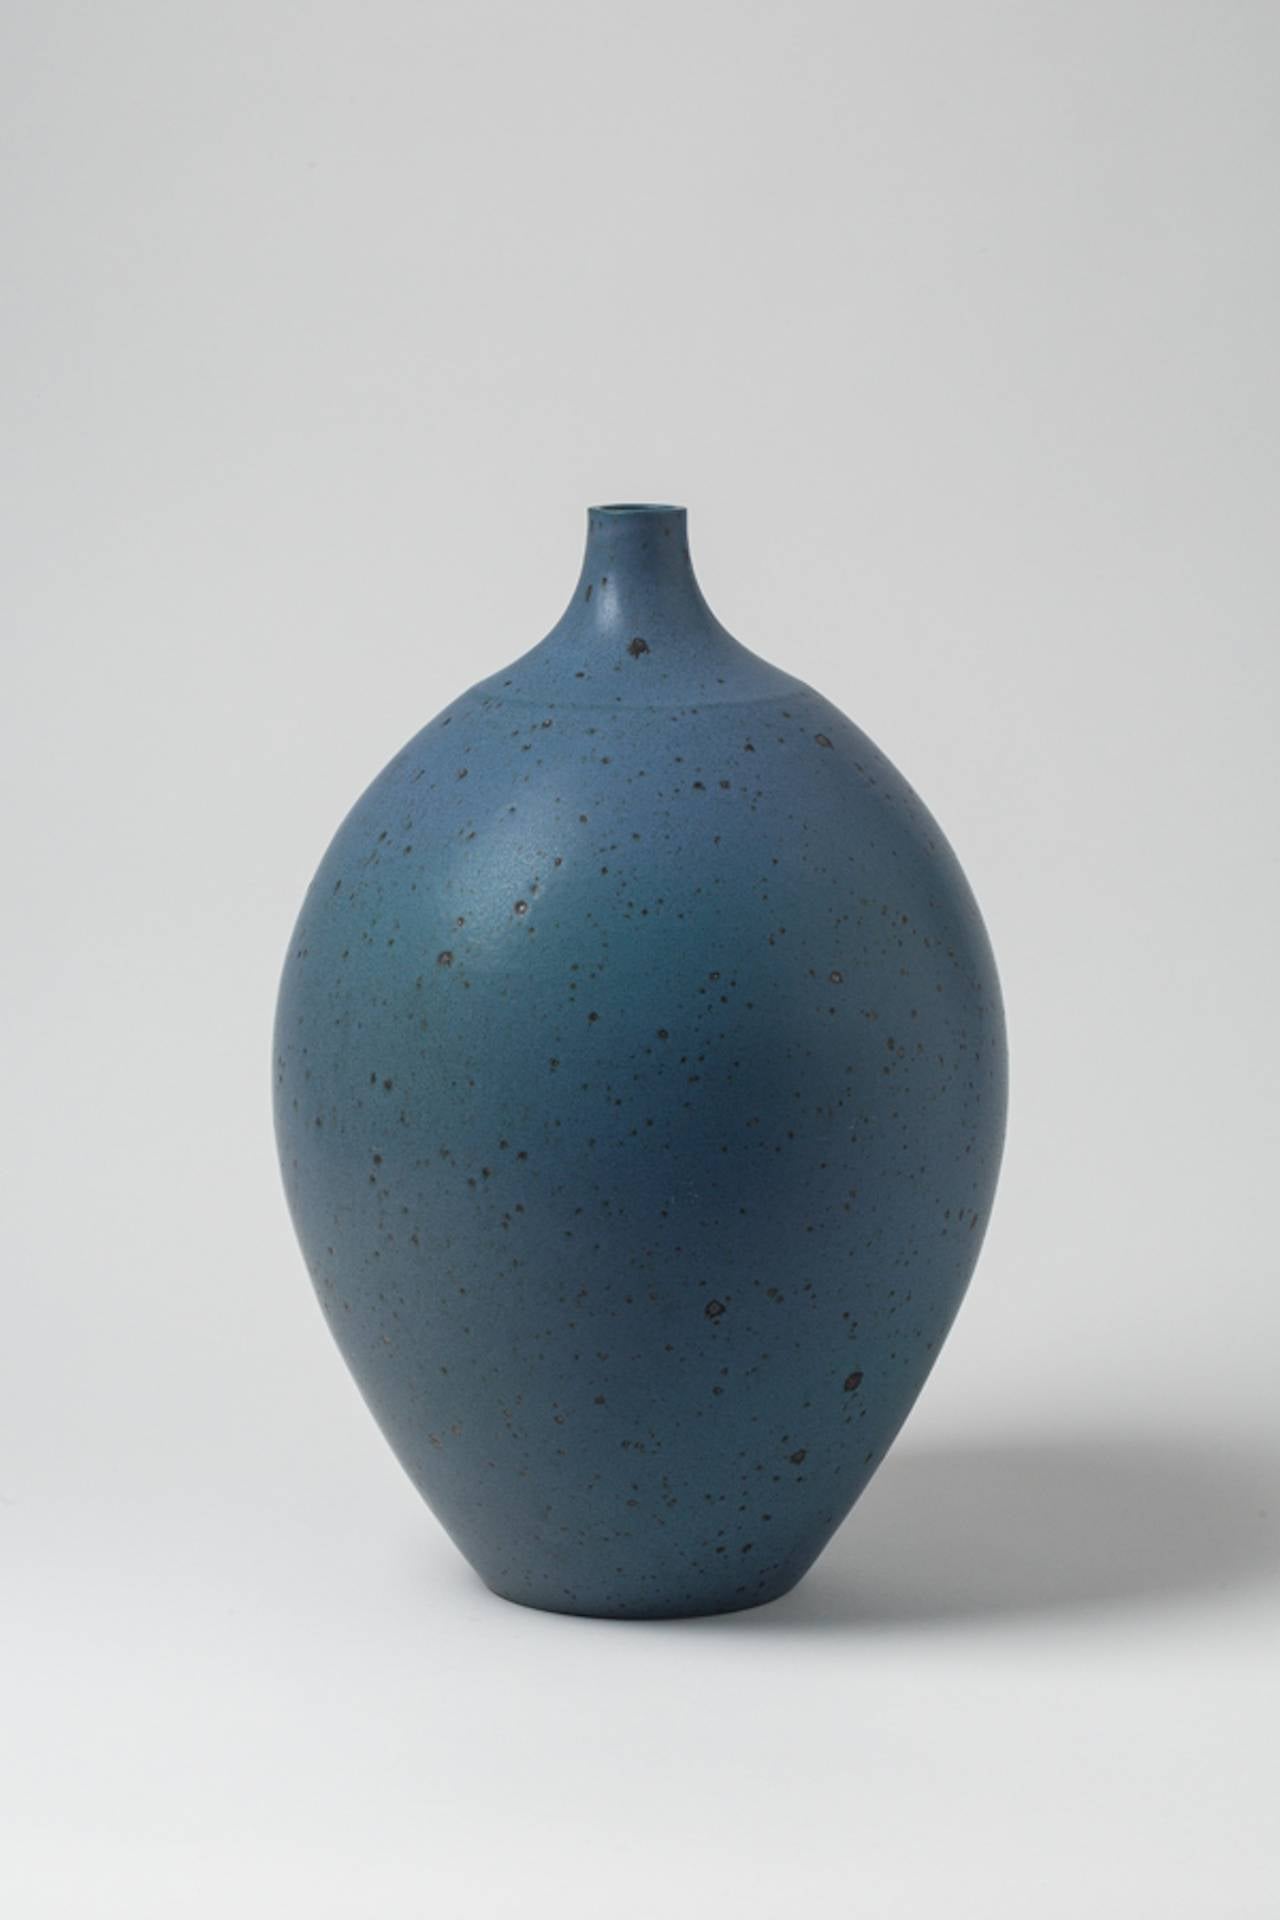 Beaux Arts Stoneware Vase by Robert Deblander, circa 1965-1970